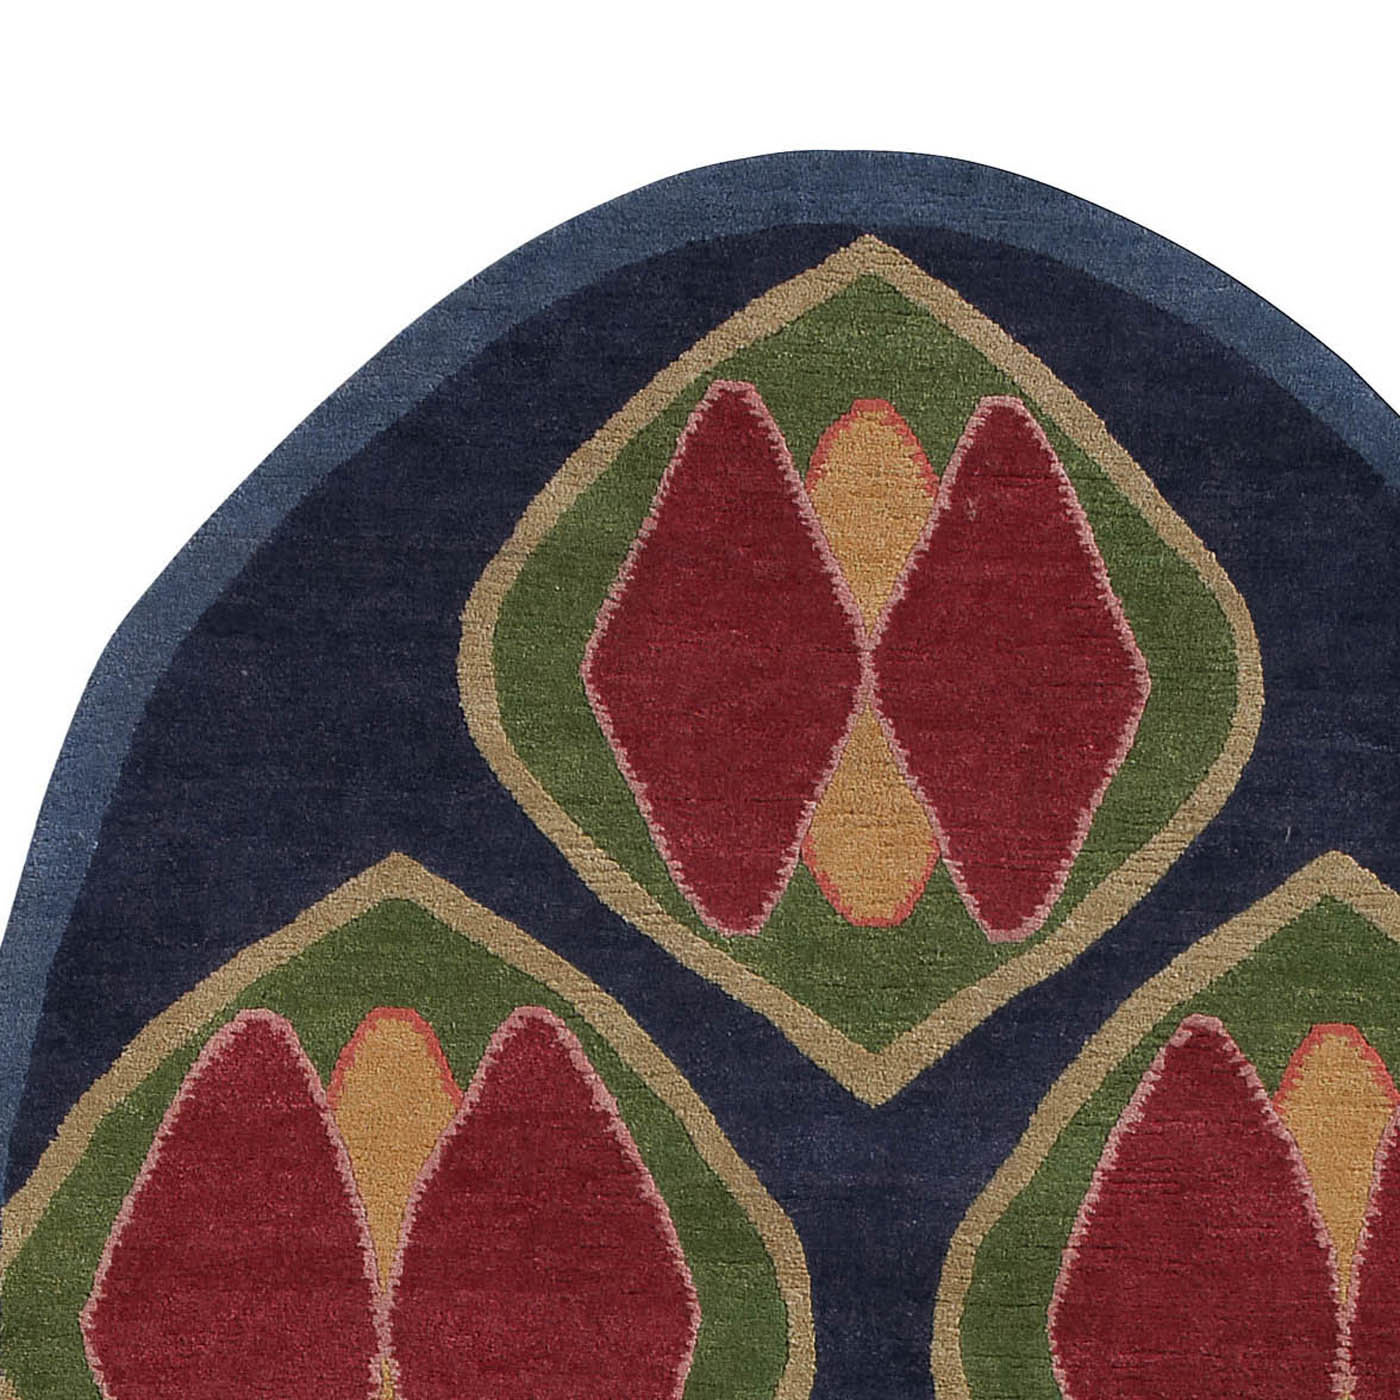 MCH3 Carpet by M. C. Hamel - Post Design - Memphis